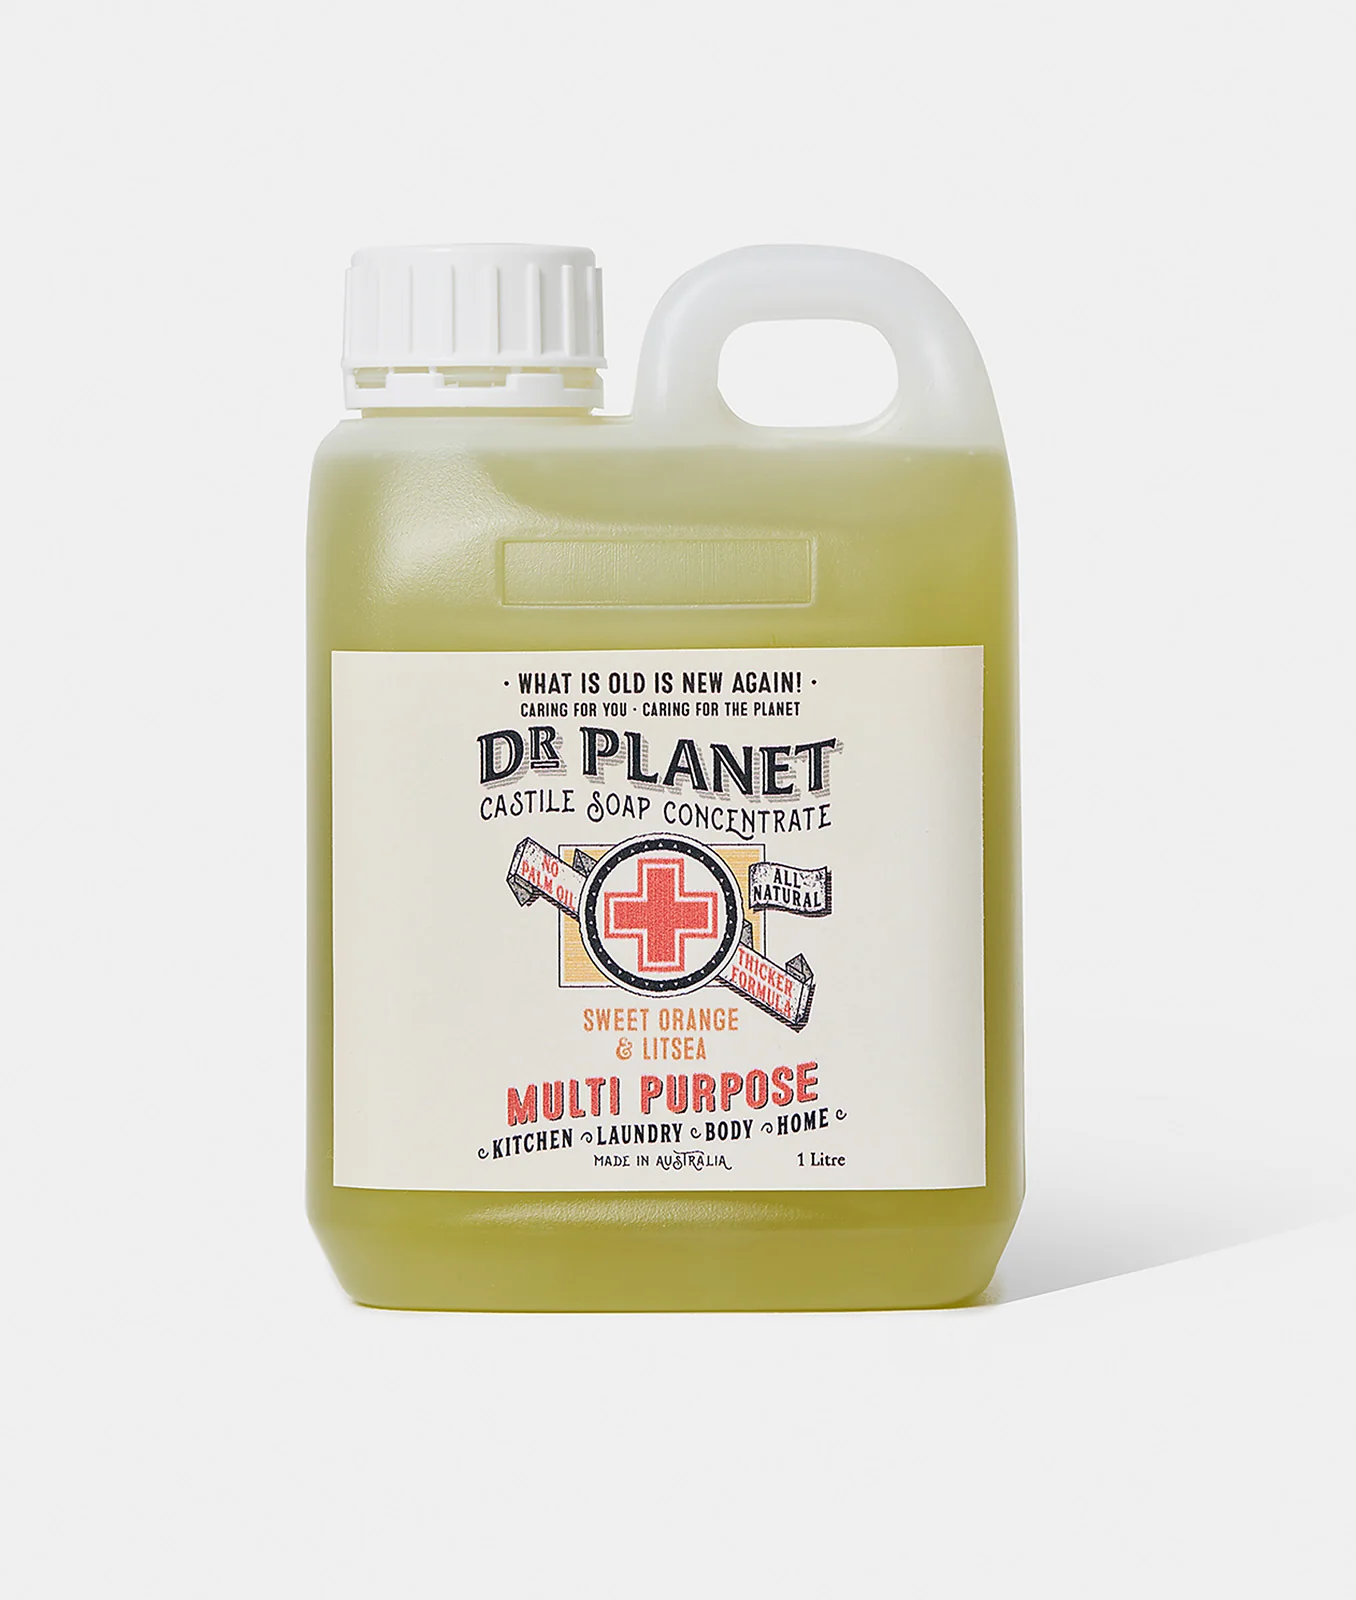 Dr-Planet-castile-soap-concentrate-multi-purpose-sweet-orange-litsea-1L